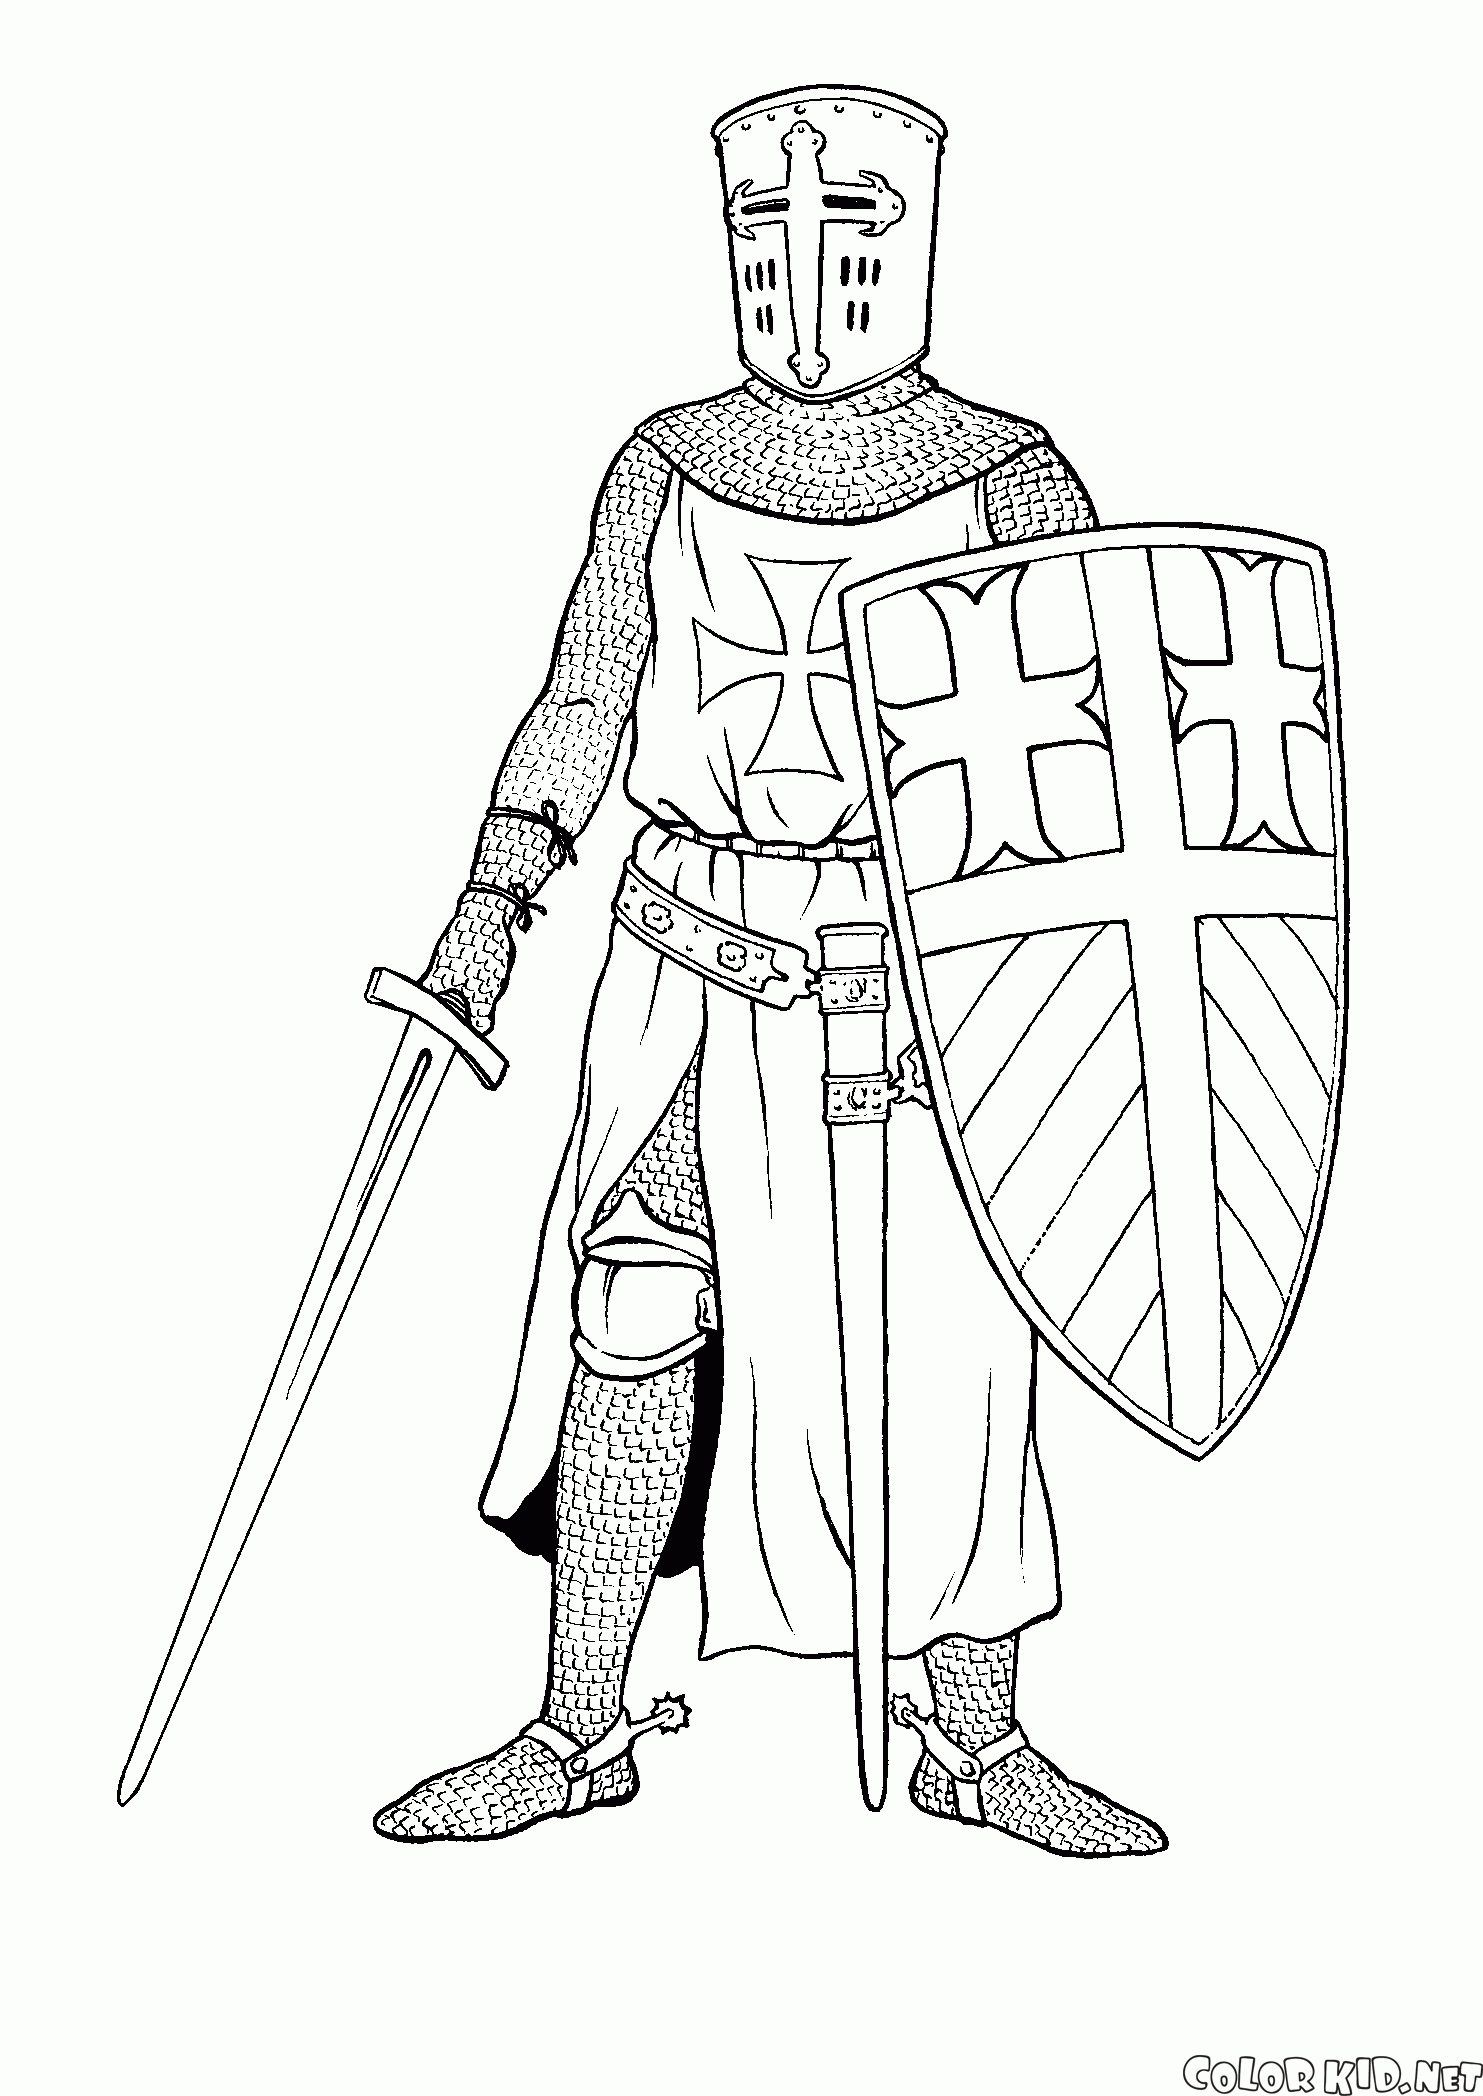 Dibujo para colorear - Knight Cruzada